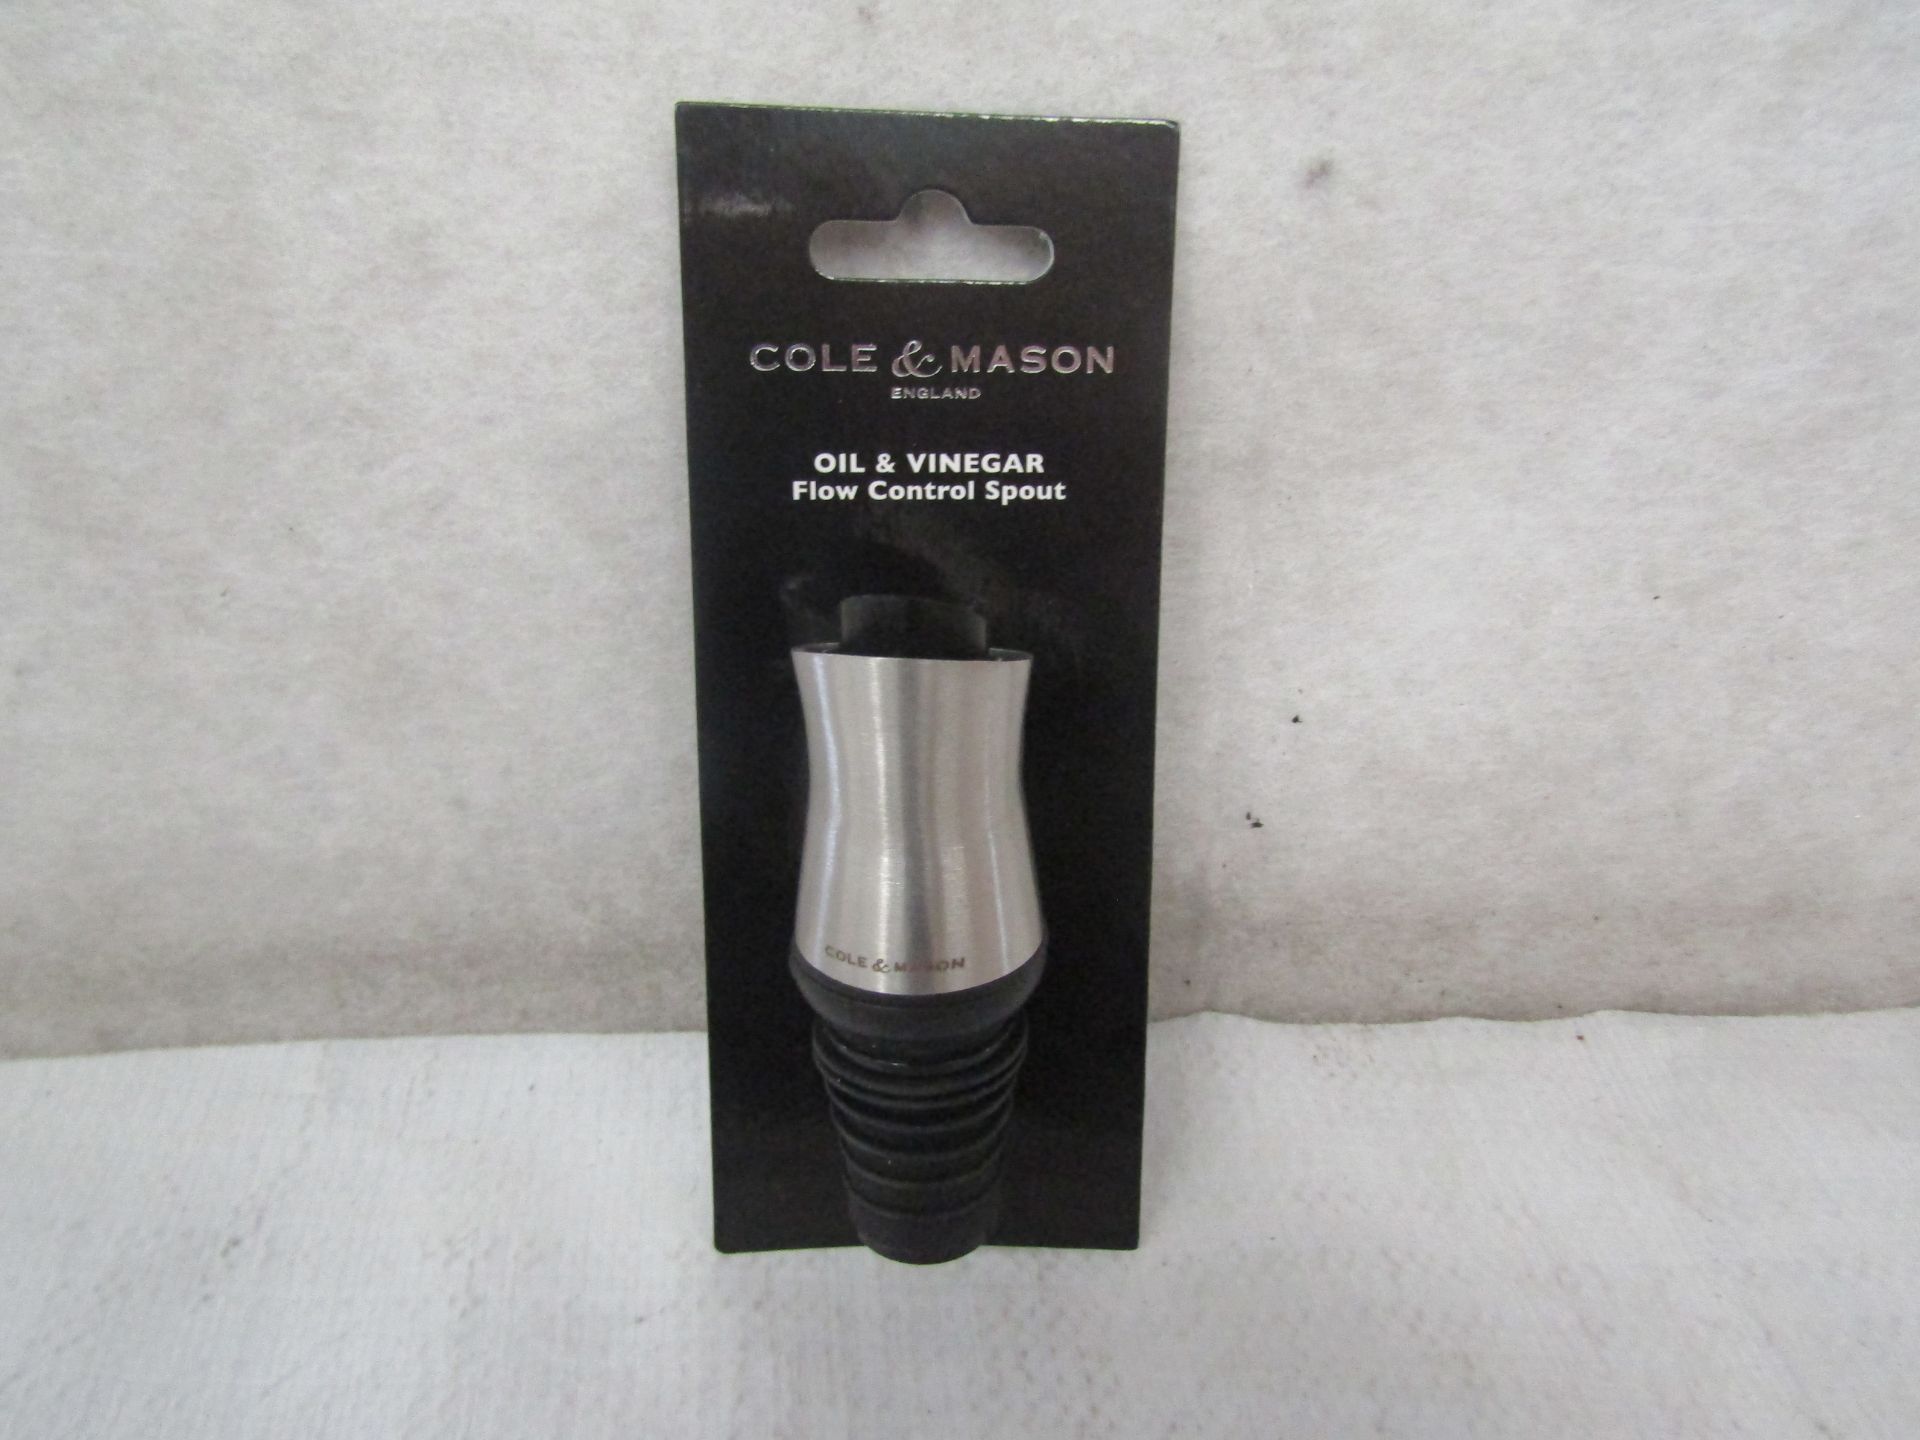 32X Cole & Mason - Flow Control Oil & Vinegar Spout - New & Boxed.